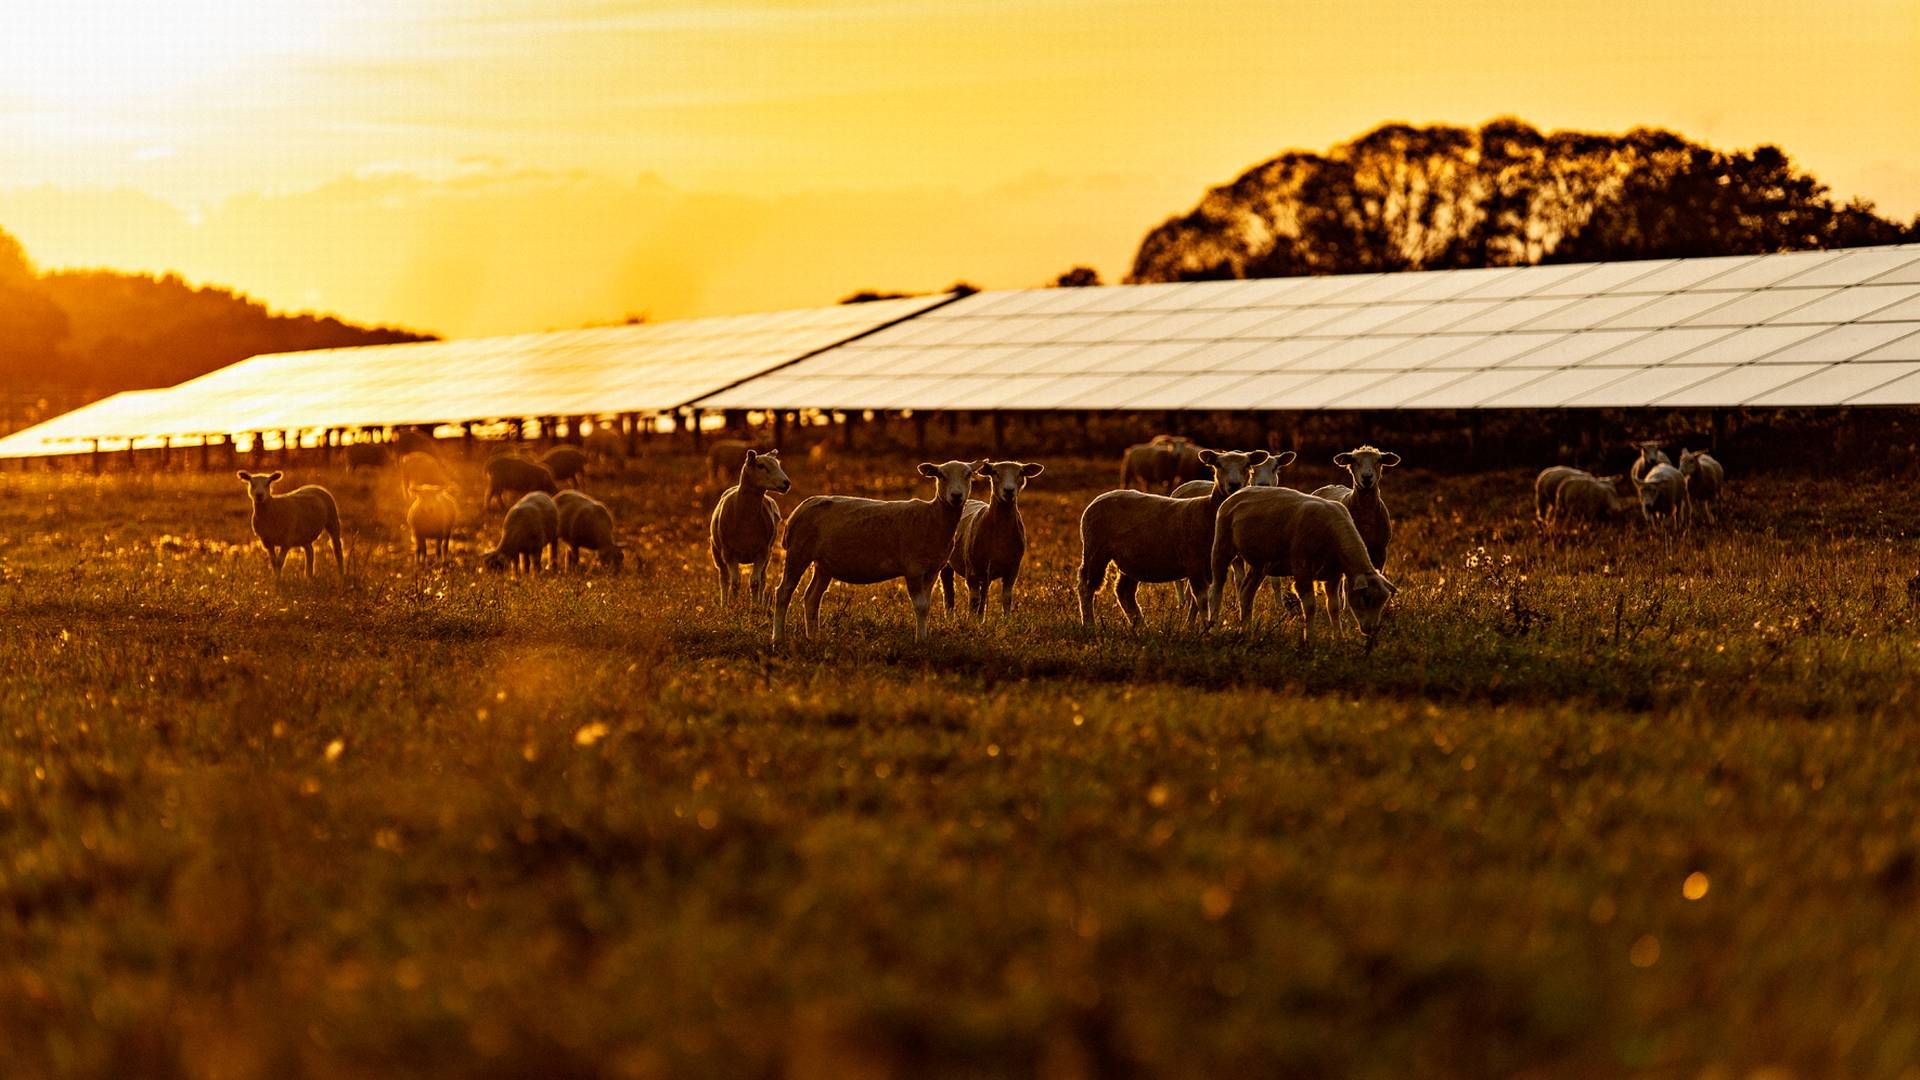 Better Energy har allerede indgået en aftale med Teknologisk Institut om at sælge strøm fra den samme solpark. | Foto: Better Energy / Pr